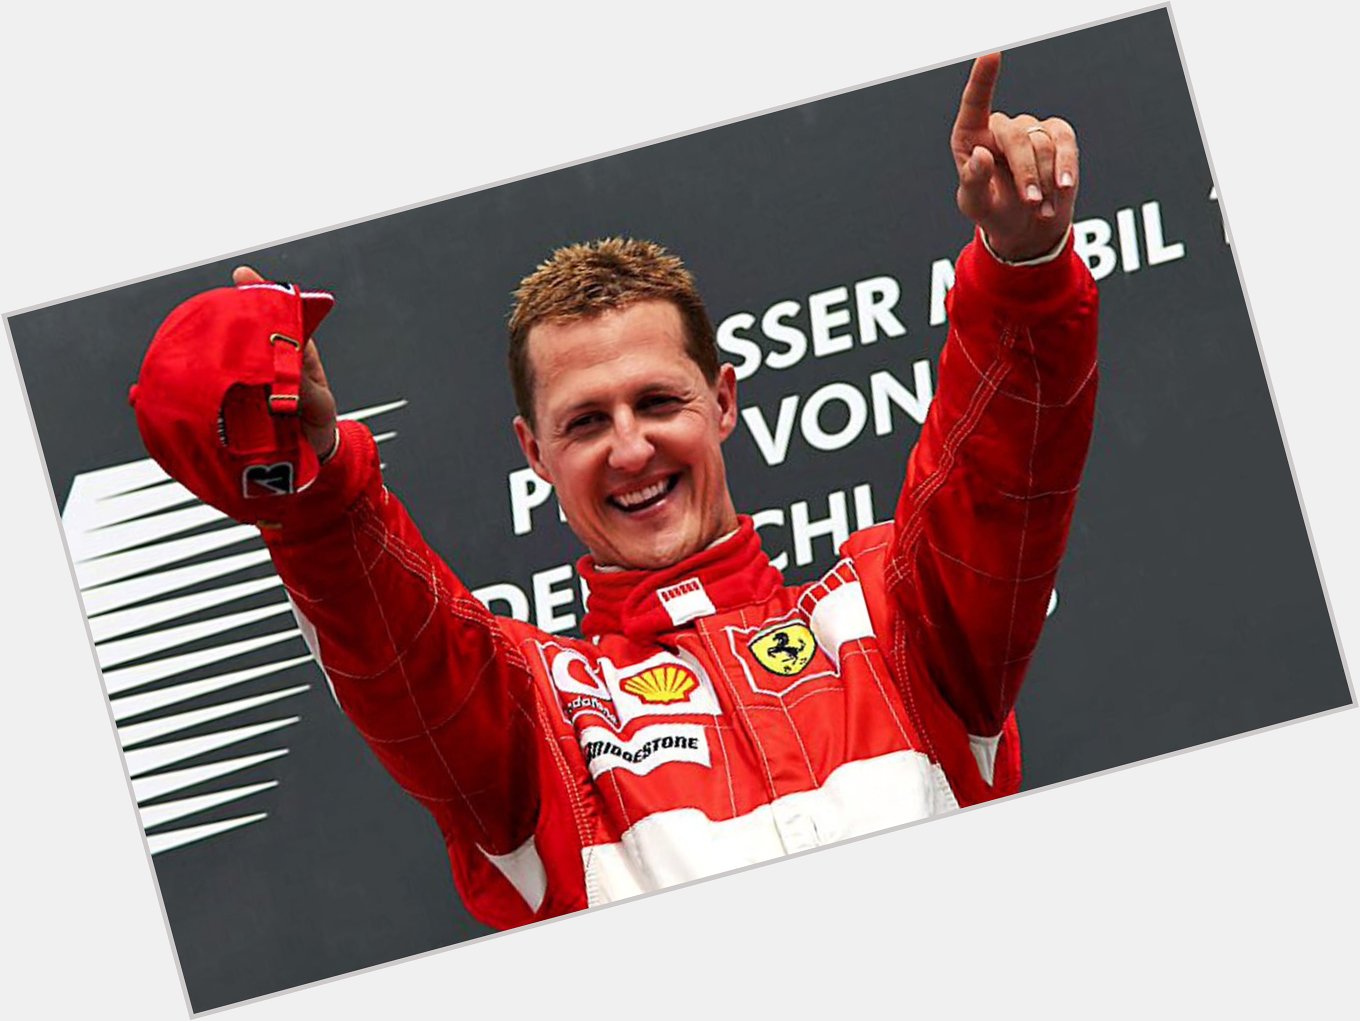 A legend, hero & icon.. 

Happy Birthday Michael Schumacher   